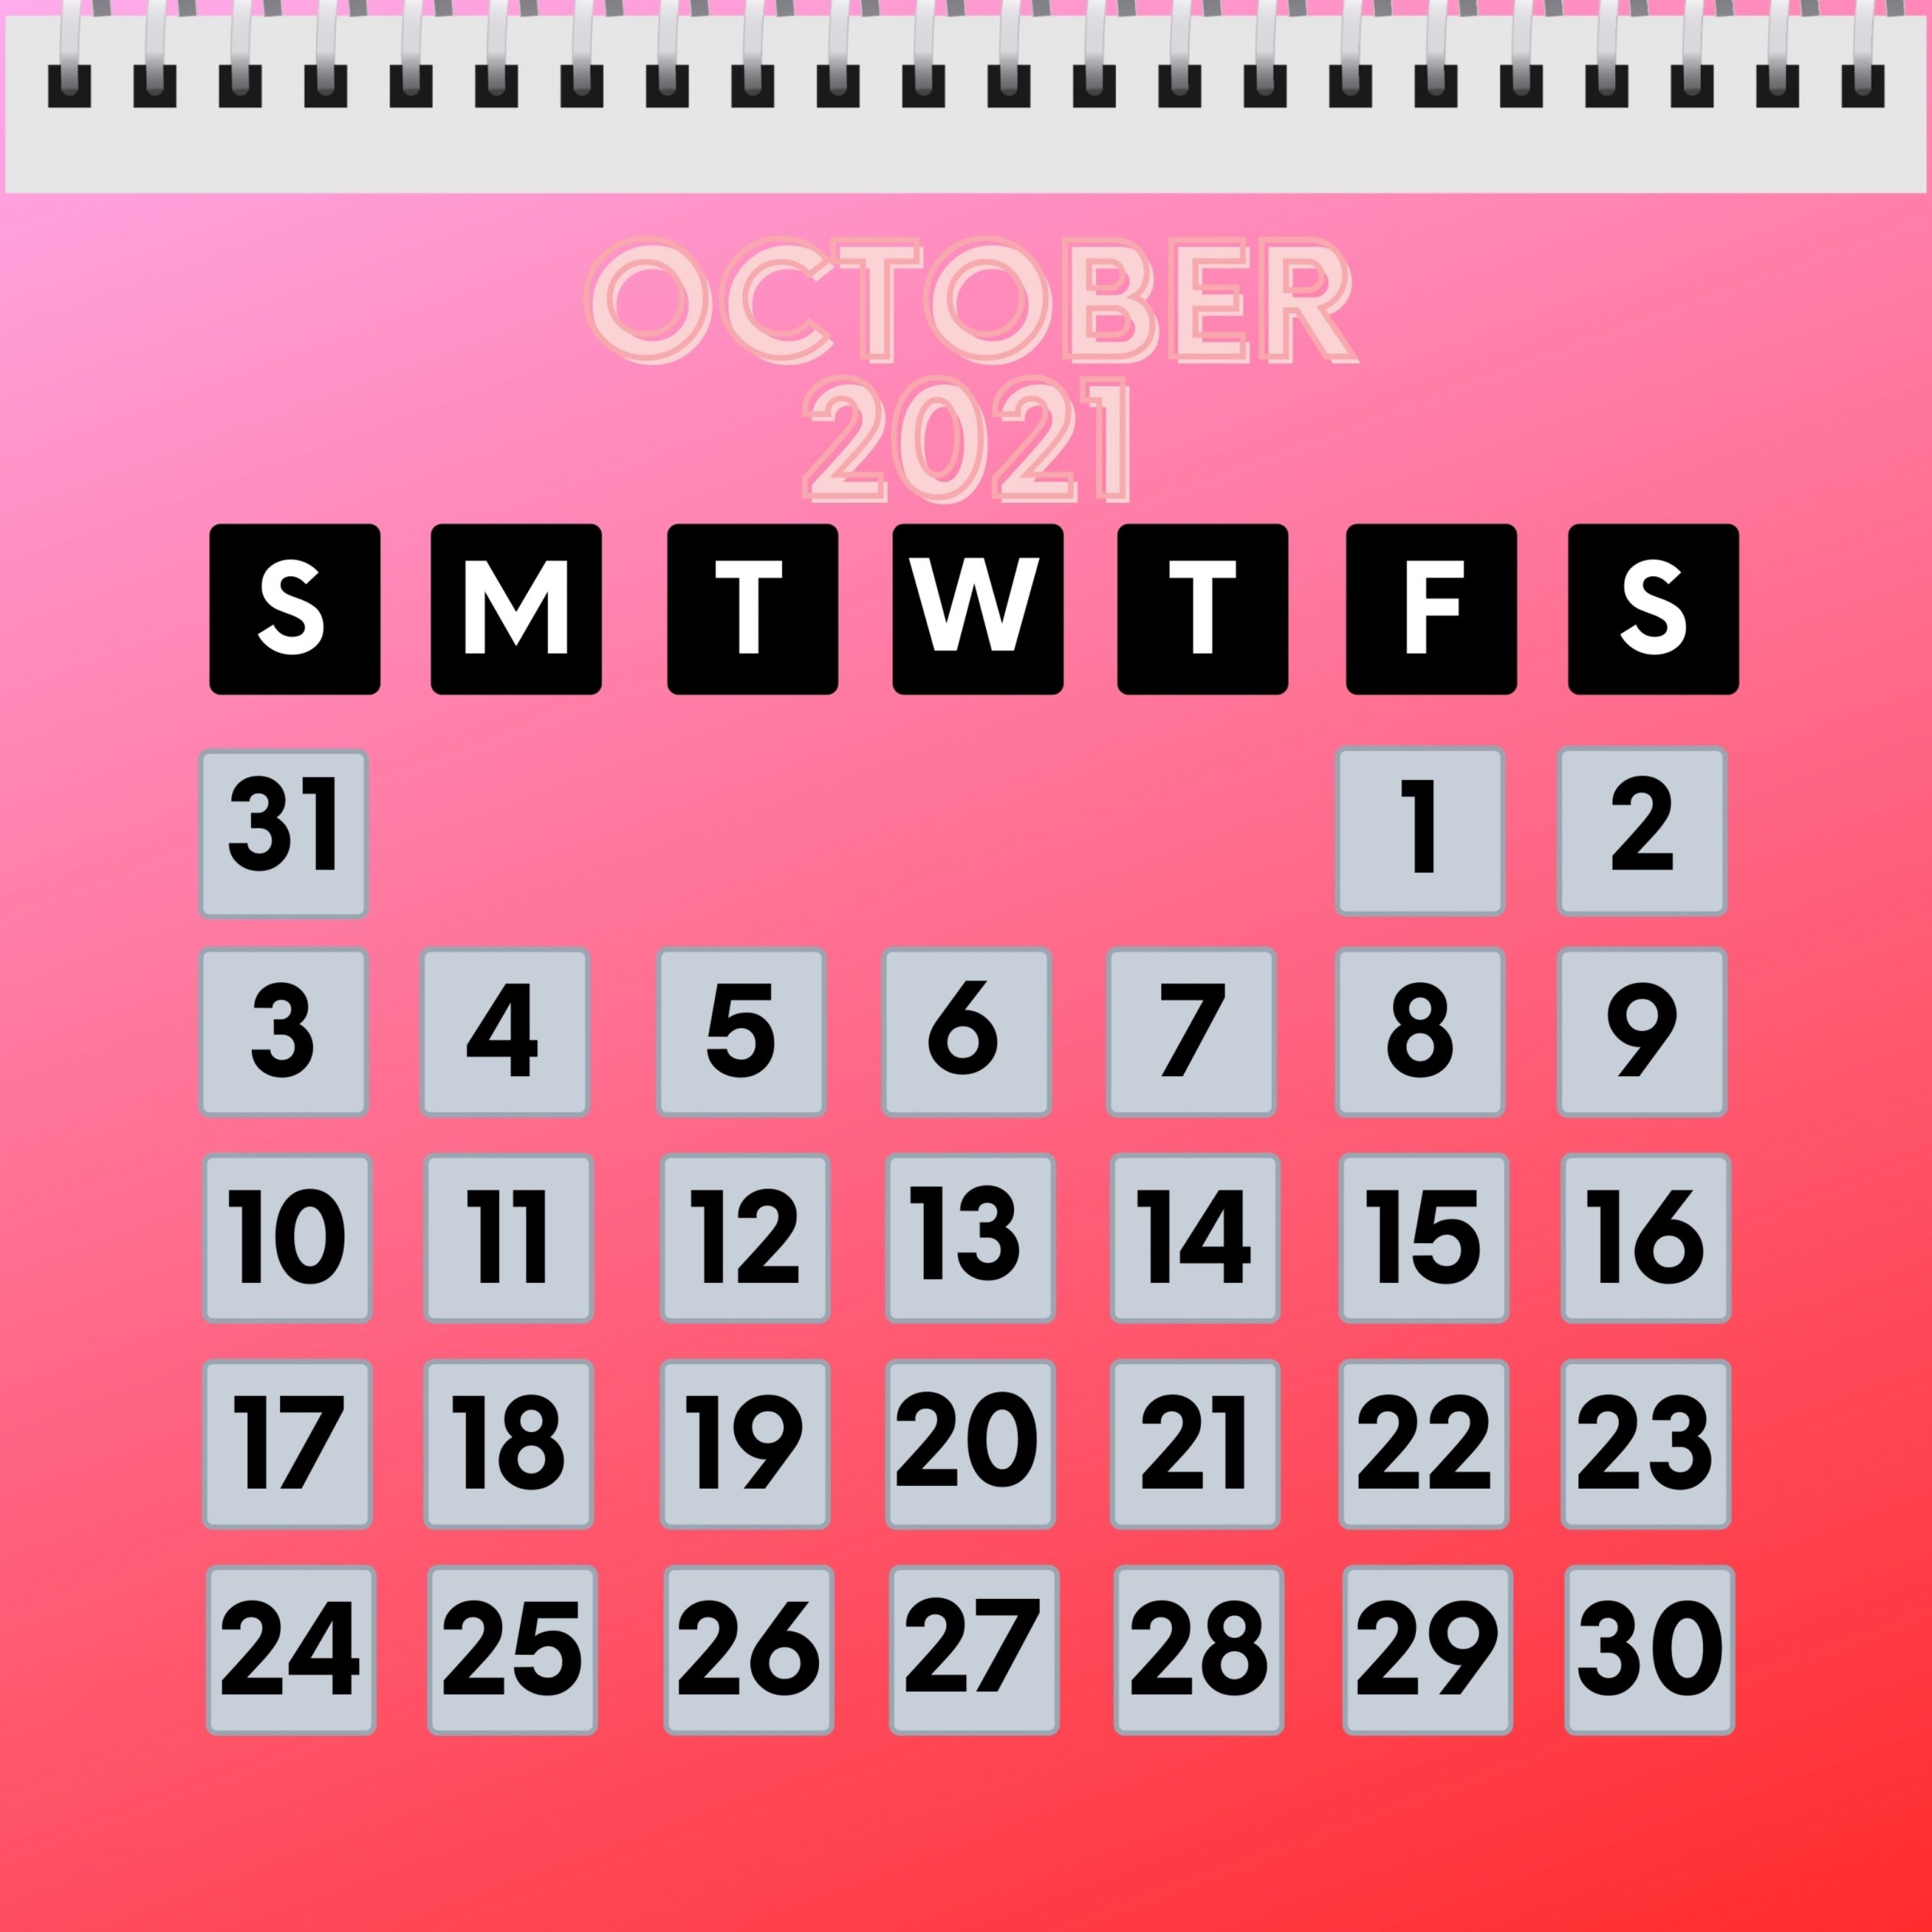 2524x2524 Parallax wallpaper 4k October 2021 Calendar iPad Wallpaper 2524x2524 pixels resolution